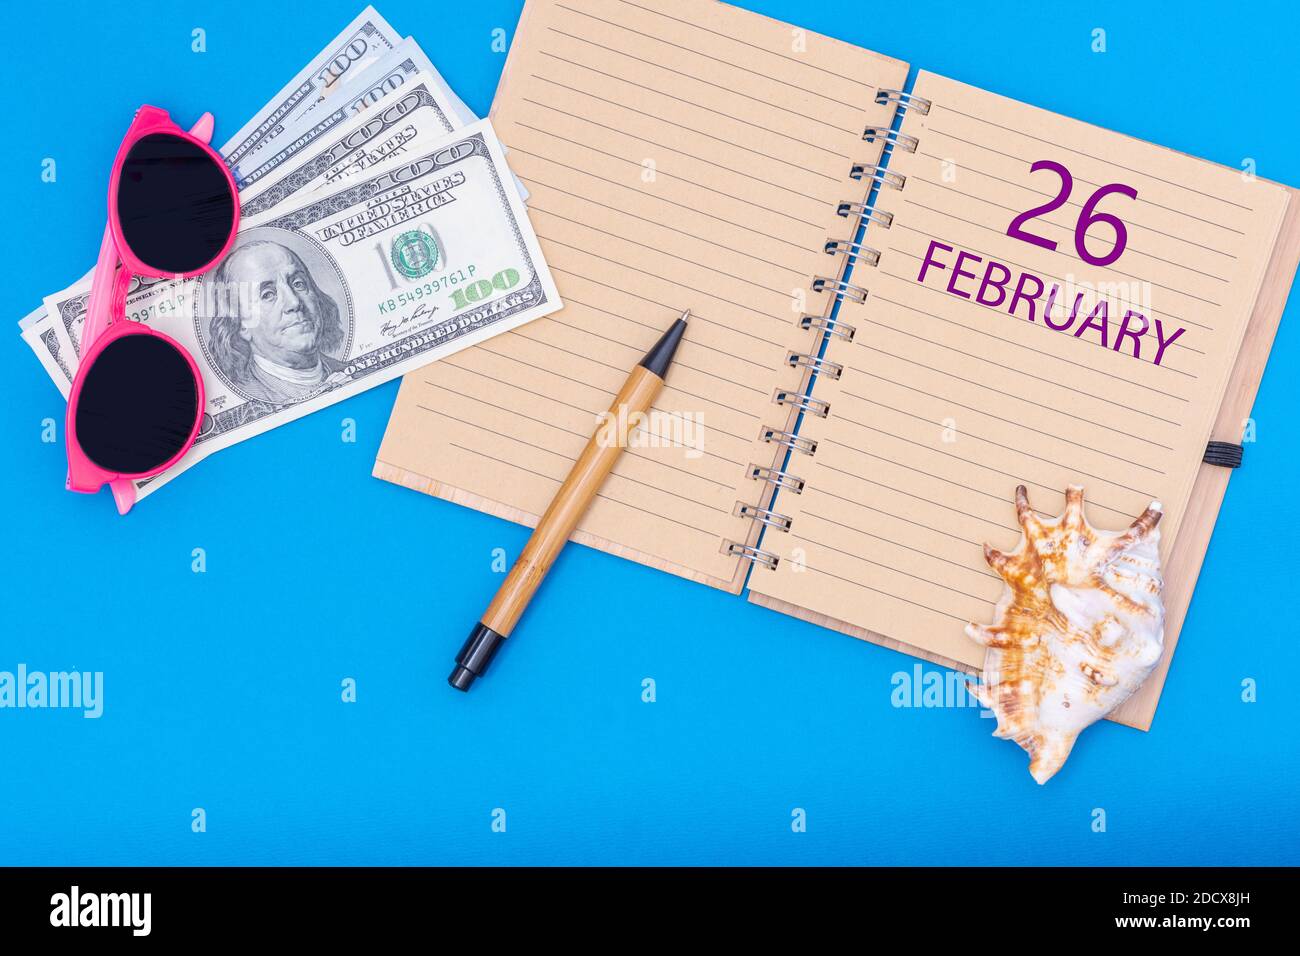 Februar. 26. Tag im Februar. Reiseplan flaches Design mit Notizblock Schreibdatum, Stift, Brille, Gelddollar und Muschel auf blauem Hintergrund. W Stockfoto